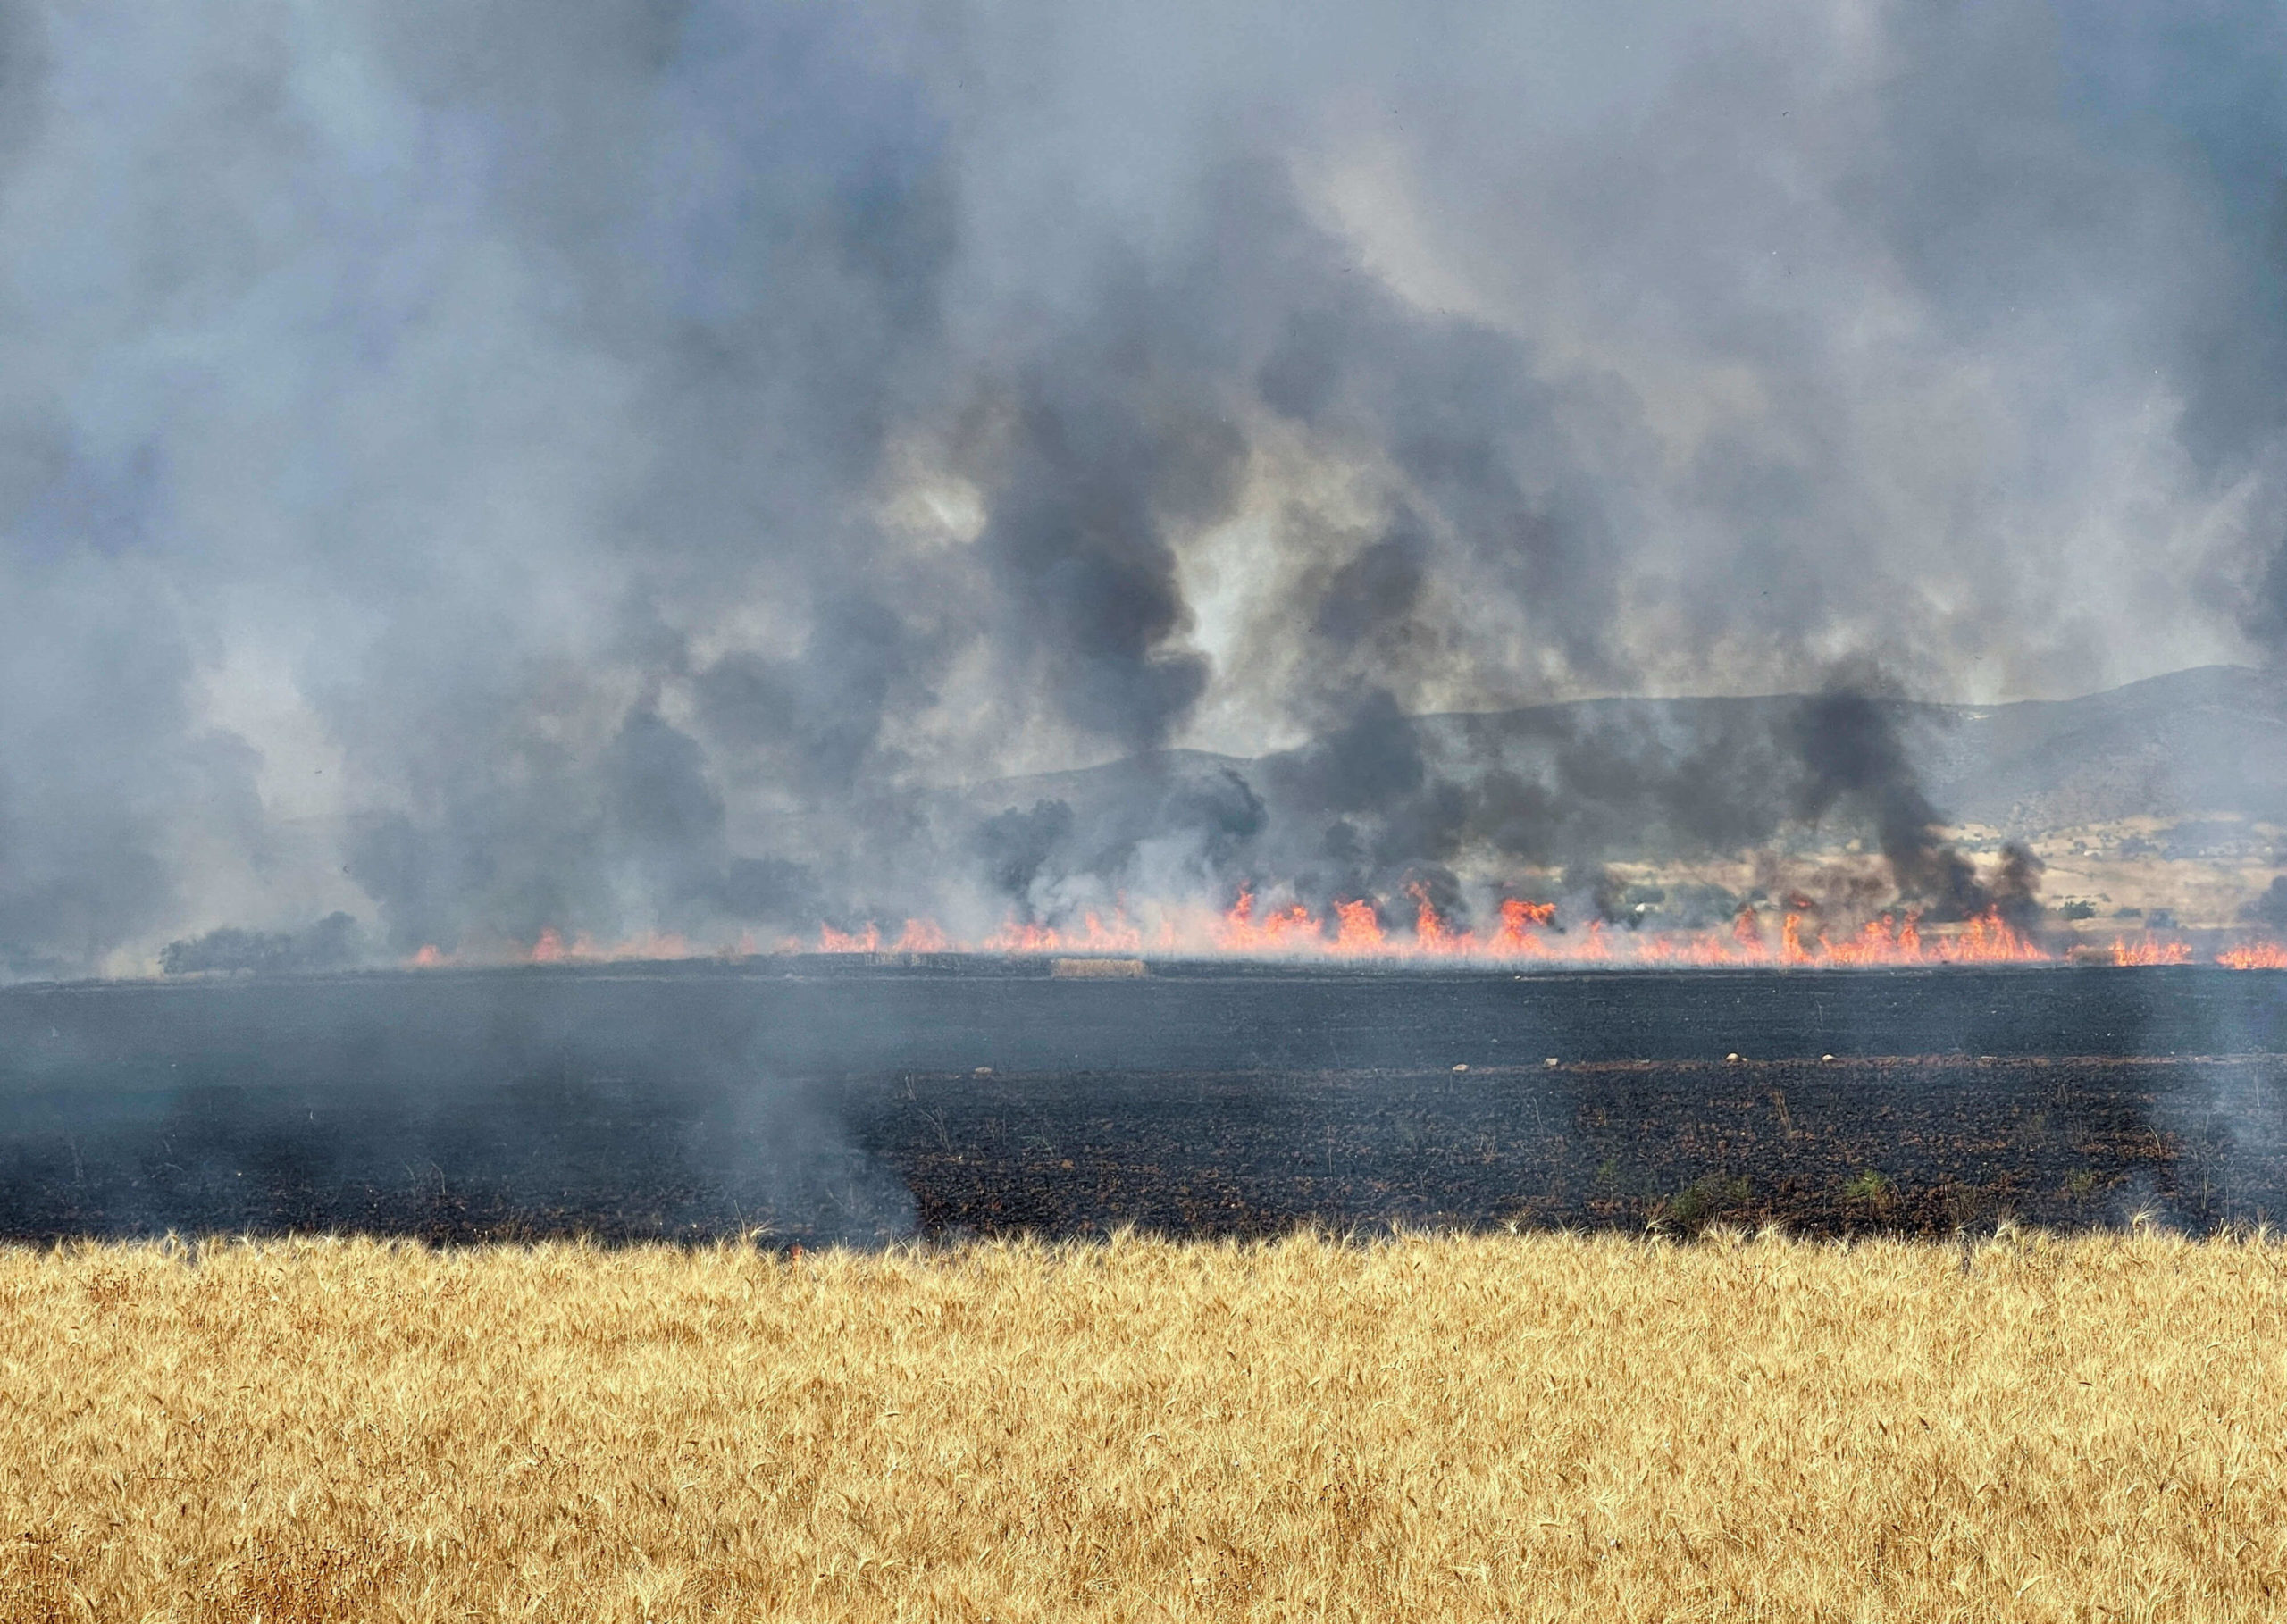 تسببت موجة حر وحرائق أضرارا بالغة بمحاصيل الحبوب في تونس